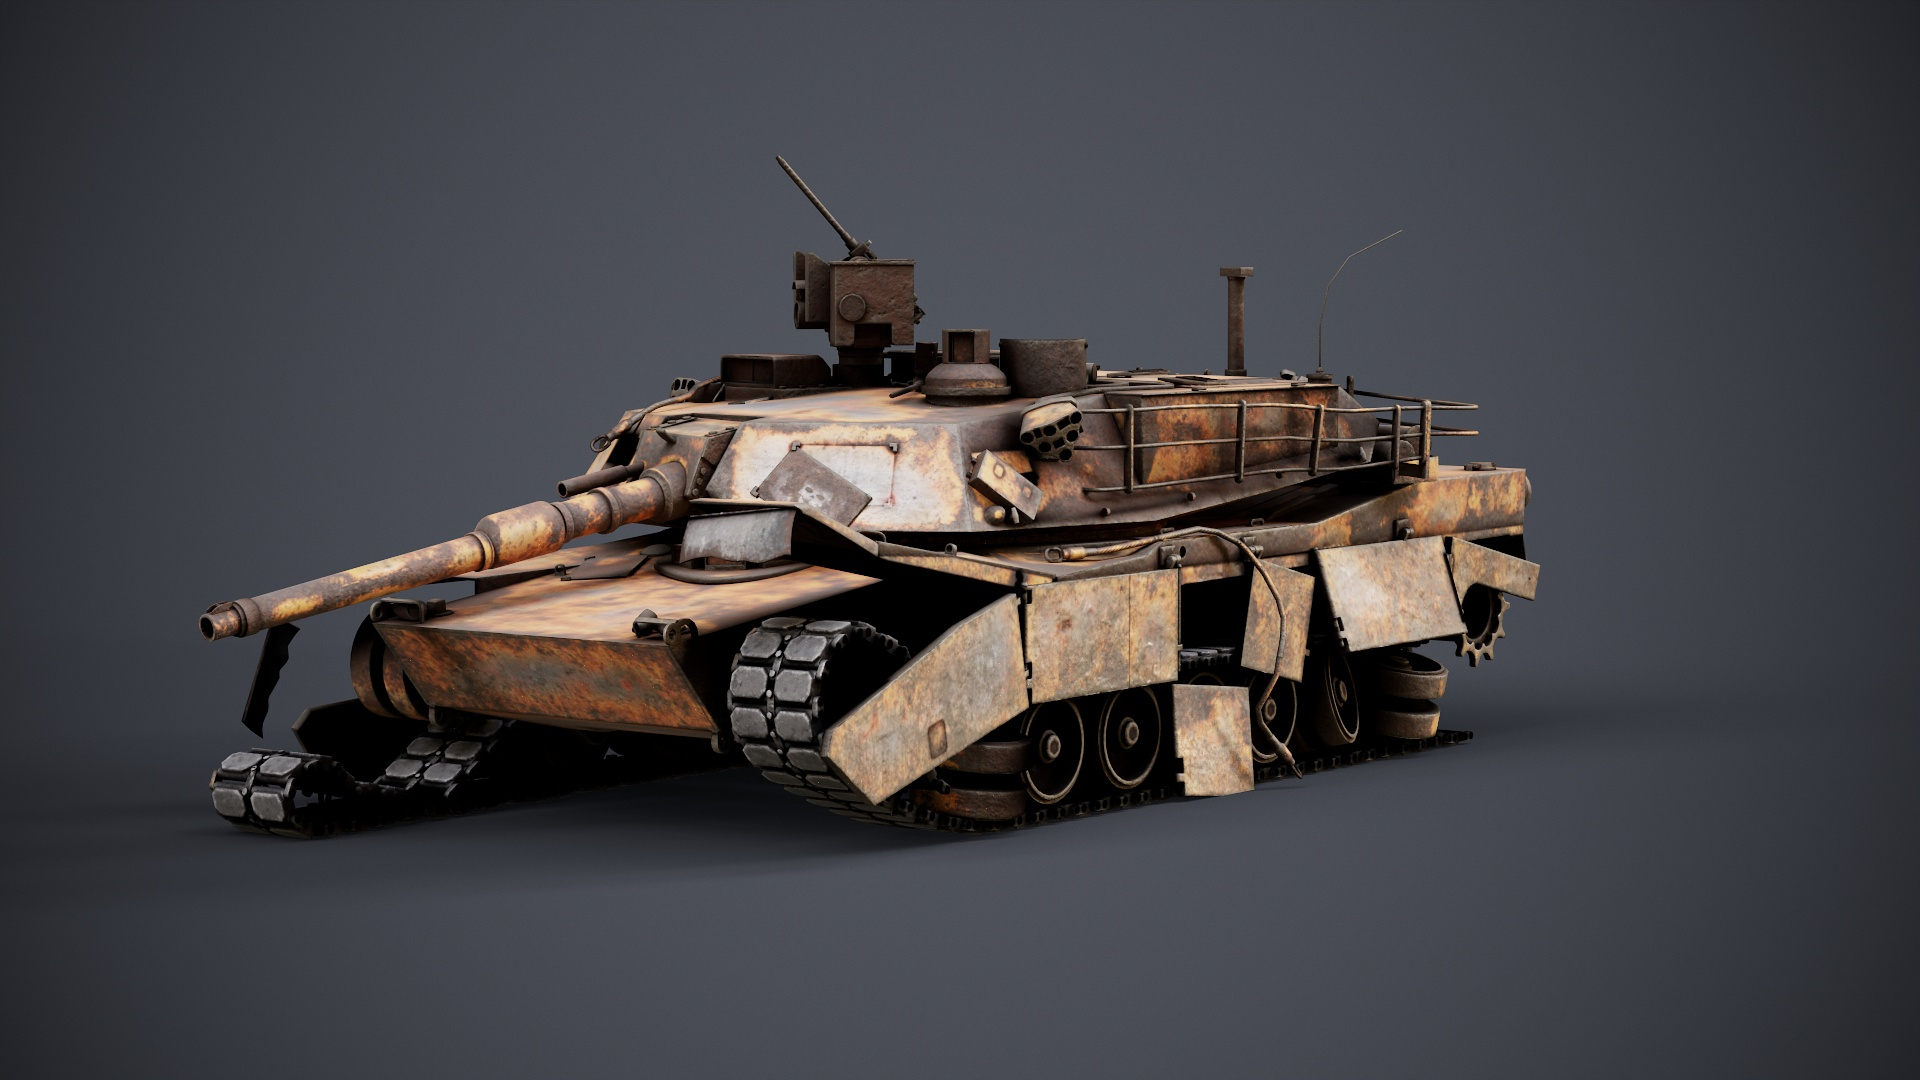 3D model M1 Abrams Destroyed https://p.turbosquid.com/ts-thumb/En/Fd3Gz5/jE/z01/jpg/1701809360/1920x1080/turn_fit_q99/d878b1a69ff6d4915e307cdaf56c86ae1c54d12f/z01-1.jpg